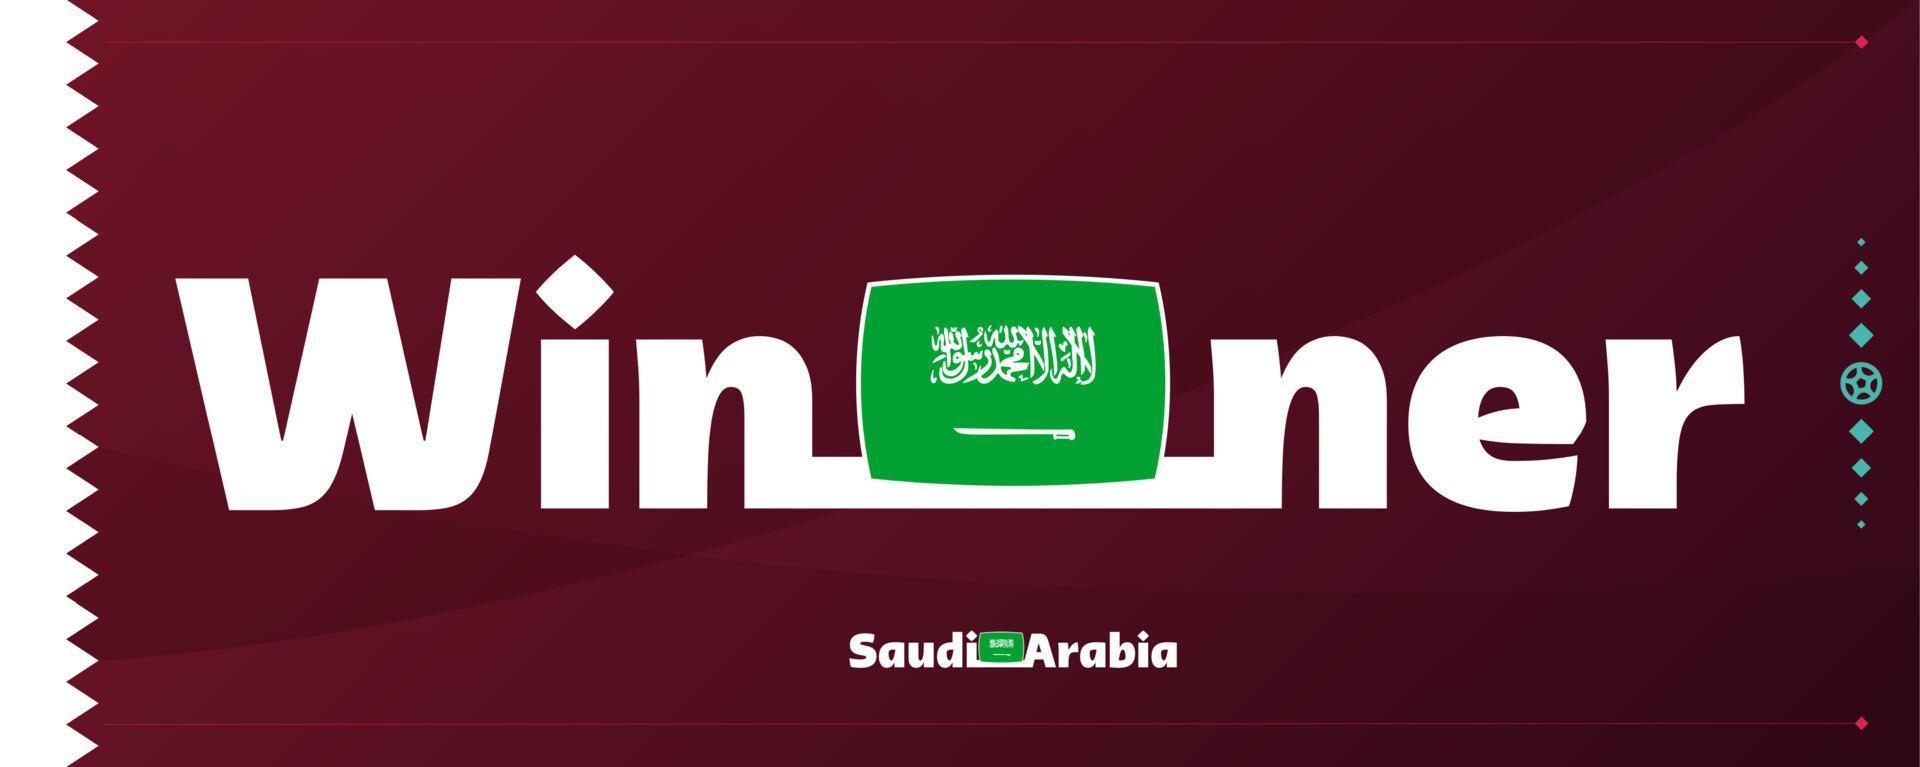 bandeira da arábia saudita com slogan vencedor no fundo do futebol. ilustração vetorial de torneio mundial de futebol 2022 vetor